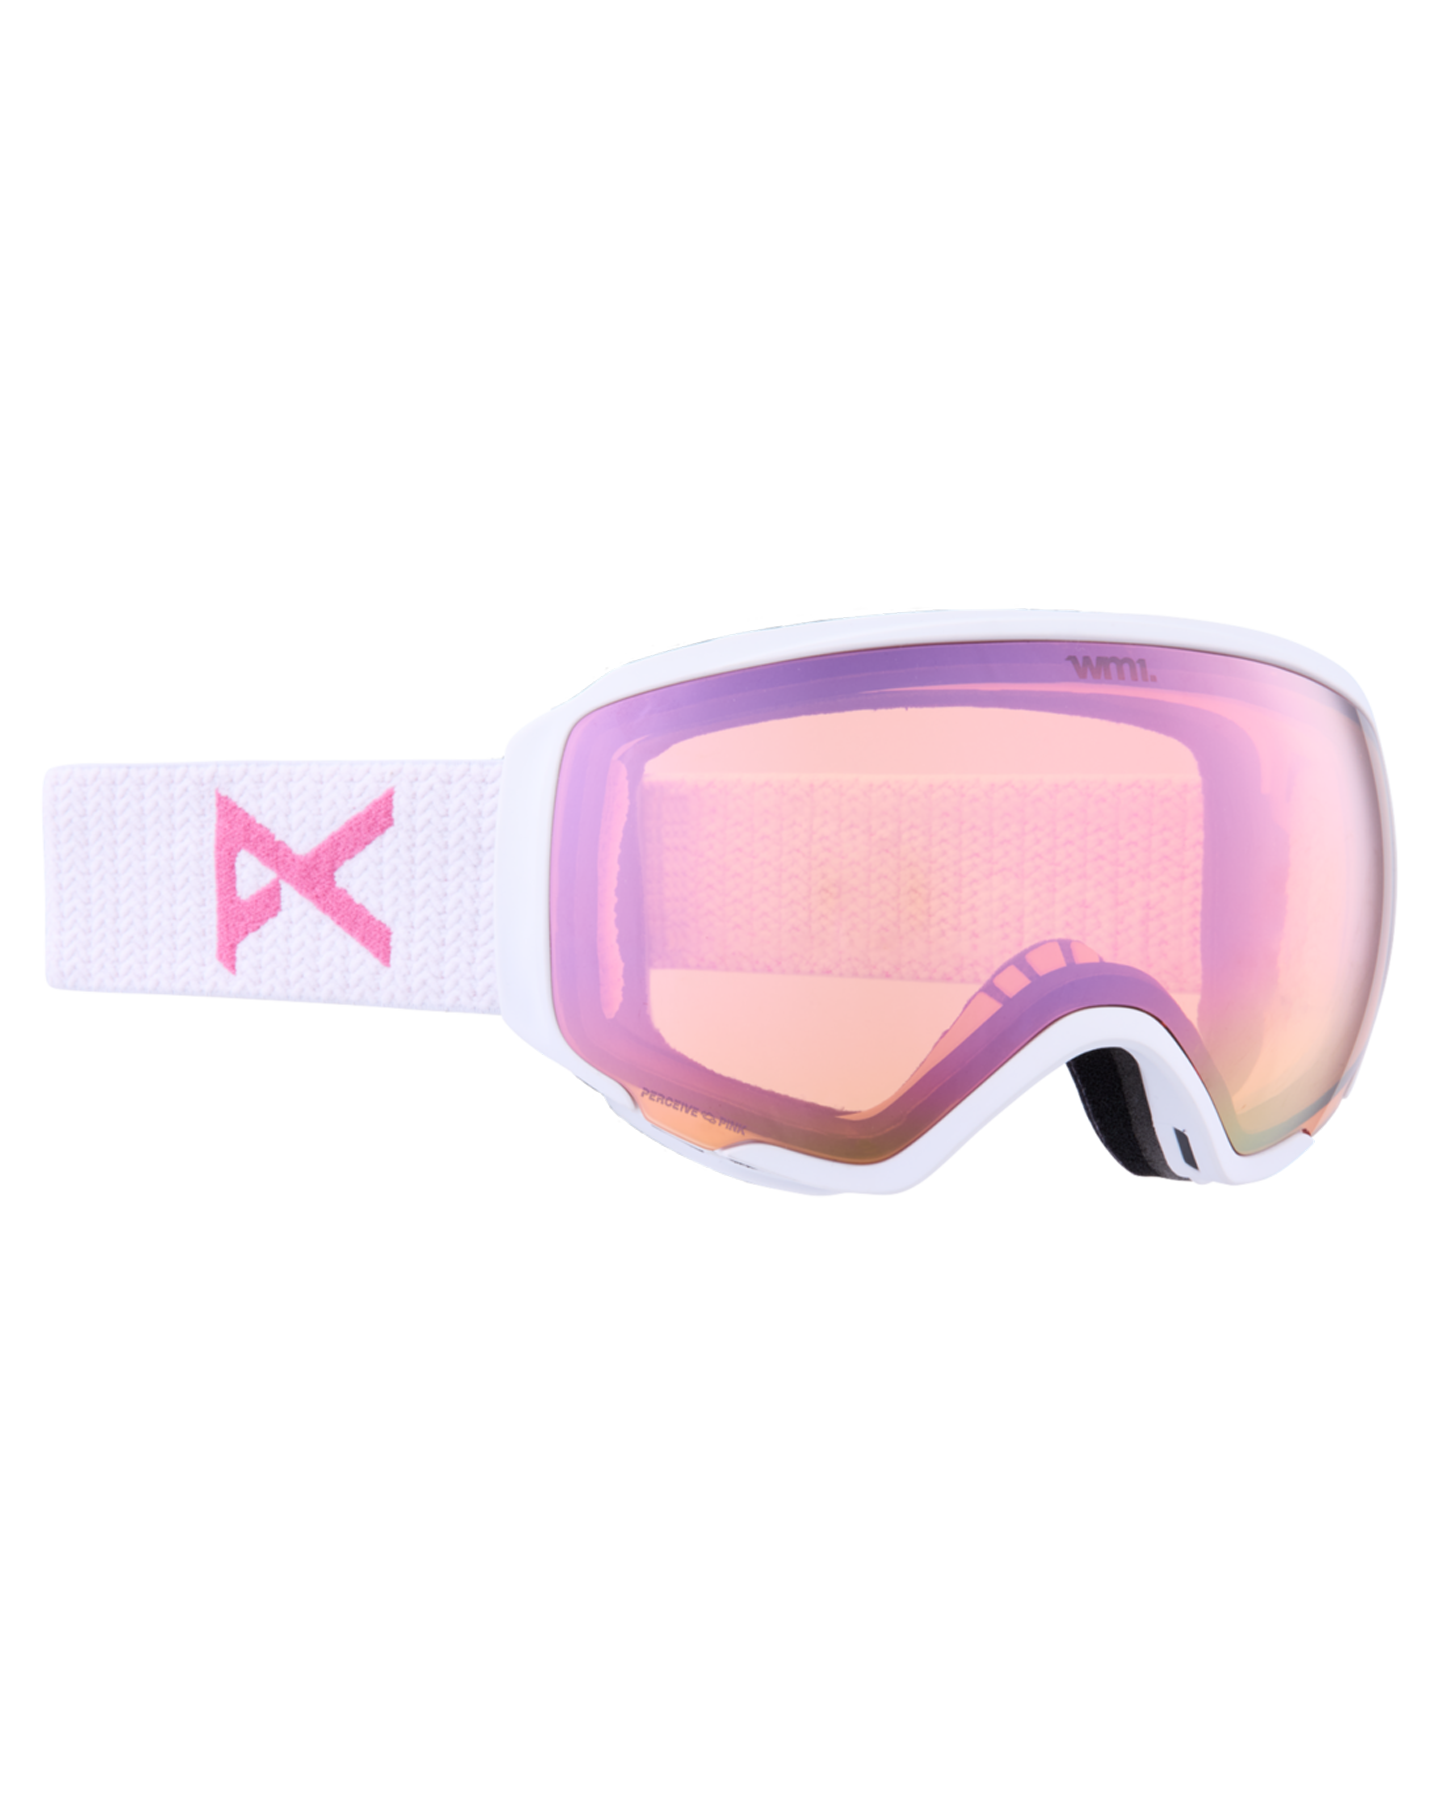 Anon WM1 Low Bridge Fit Snow Goggles + Bonus Lens + MFI - White / Perceive Cloudy Pink Women's Snow Goggles - Trojan Wake Ski Snow